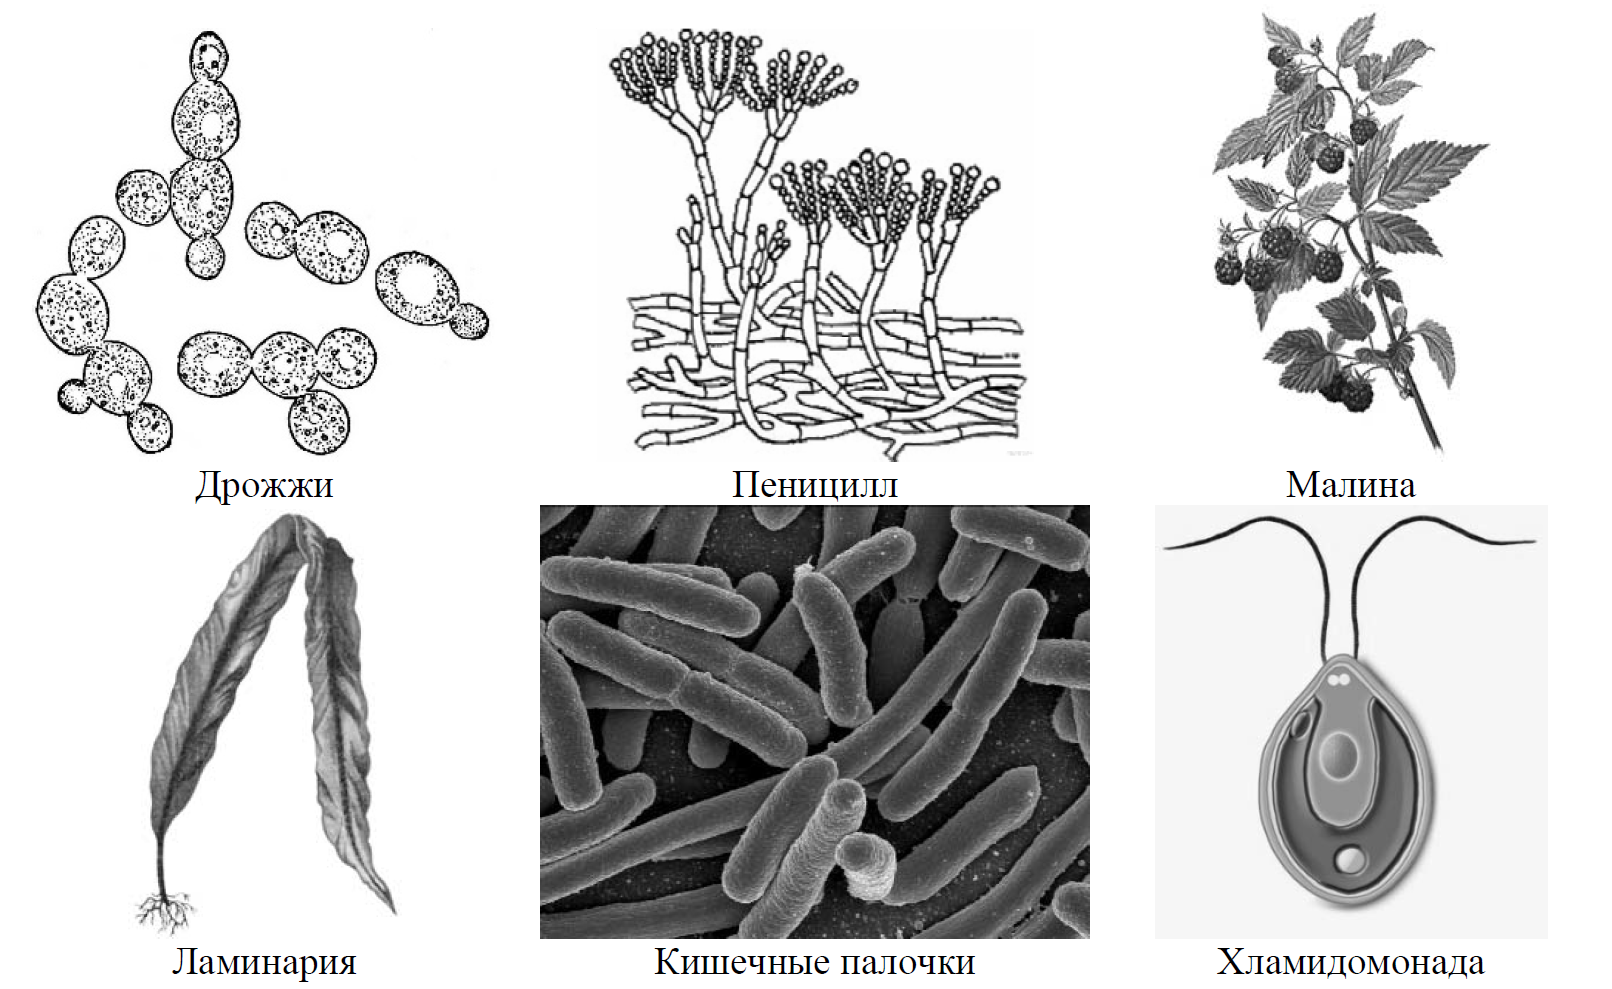 Впр по биологии 7 класс 2024г растения. Дрожжи пеницилл малина ламинария кишечные палочки хламидомонада. Рассмотрите изображение шести организмов предложите. Рассмотрите изображение 6 организмов. Рассмотрите изображение шести организмов предложите основание.